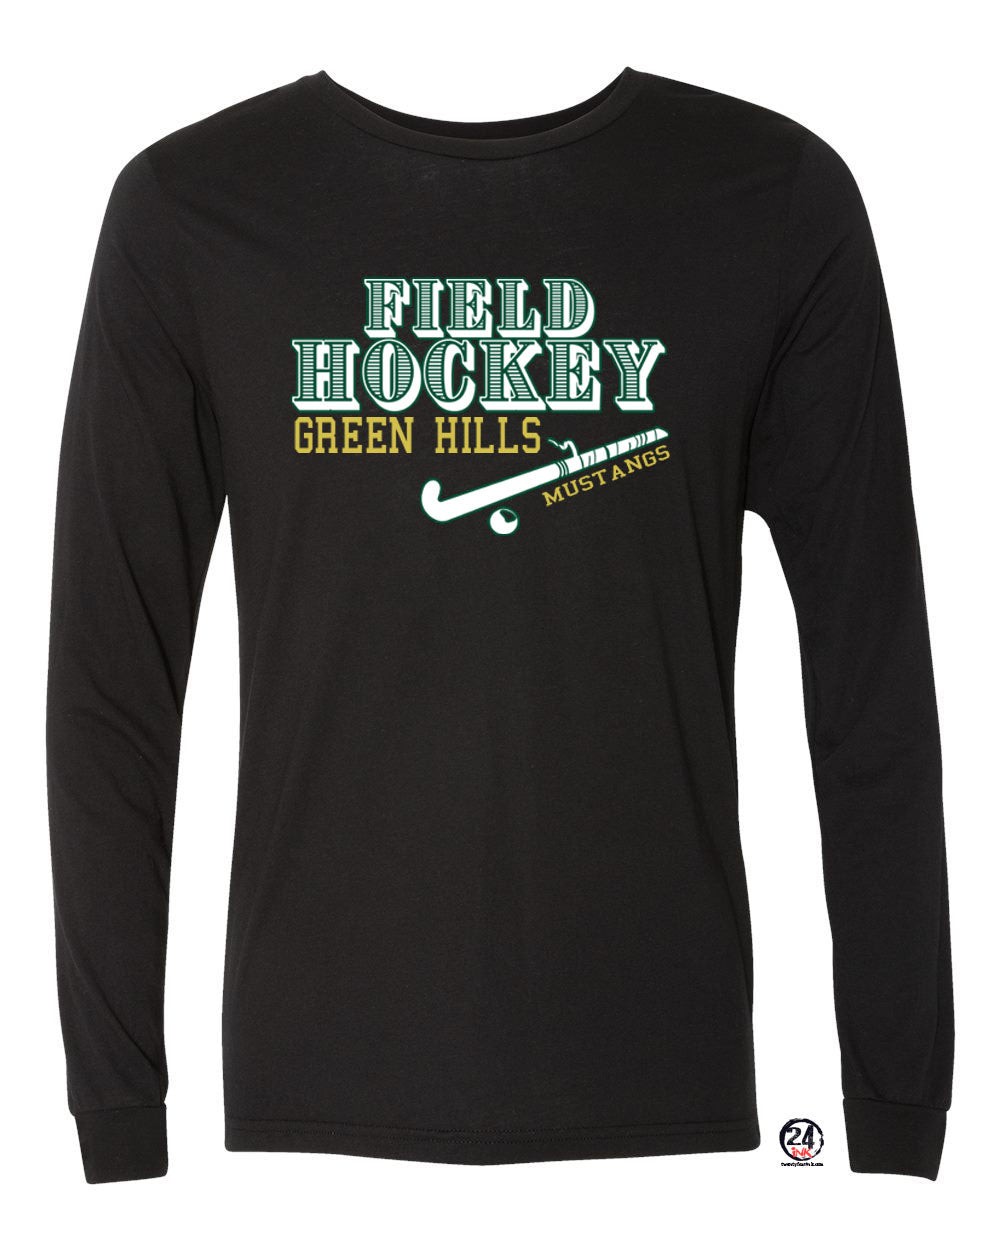 Green Hills Field Hockey design 1 Long Sleeve Shirt